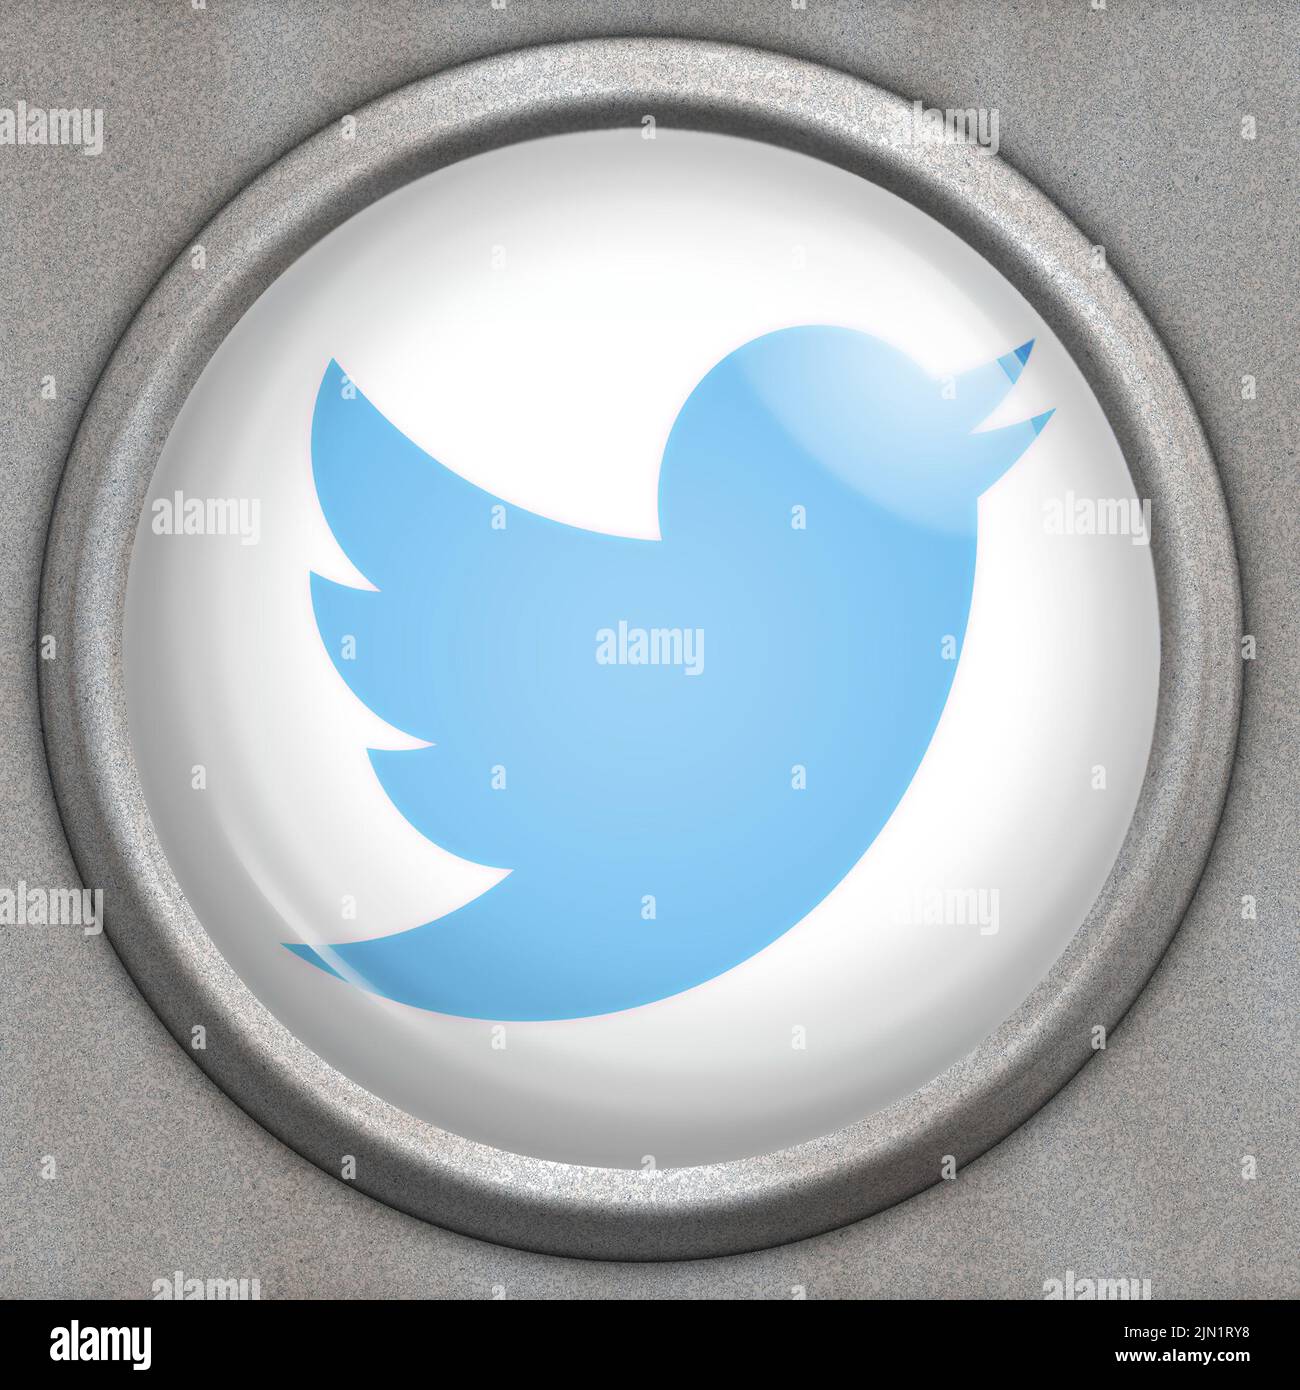 Botón con logotipo del servicio de redes sociales Twitter Foto de stock